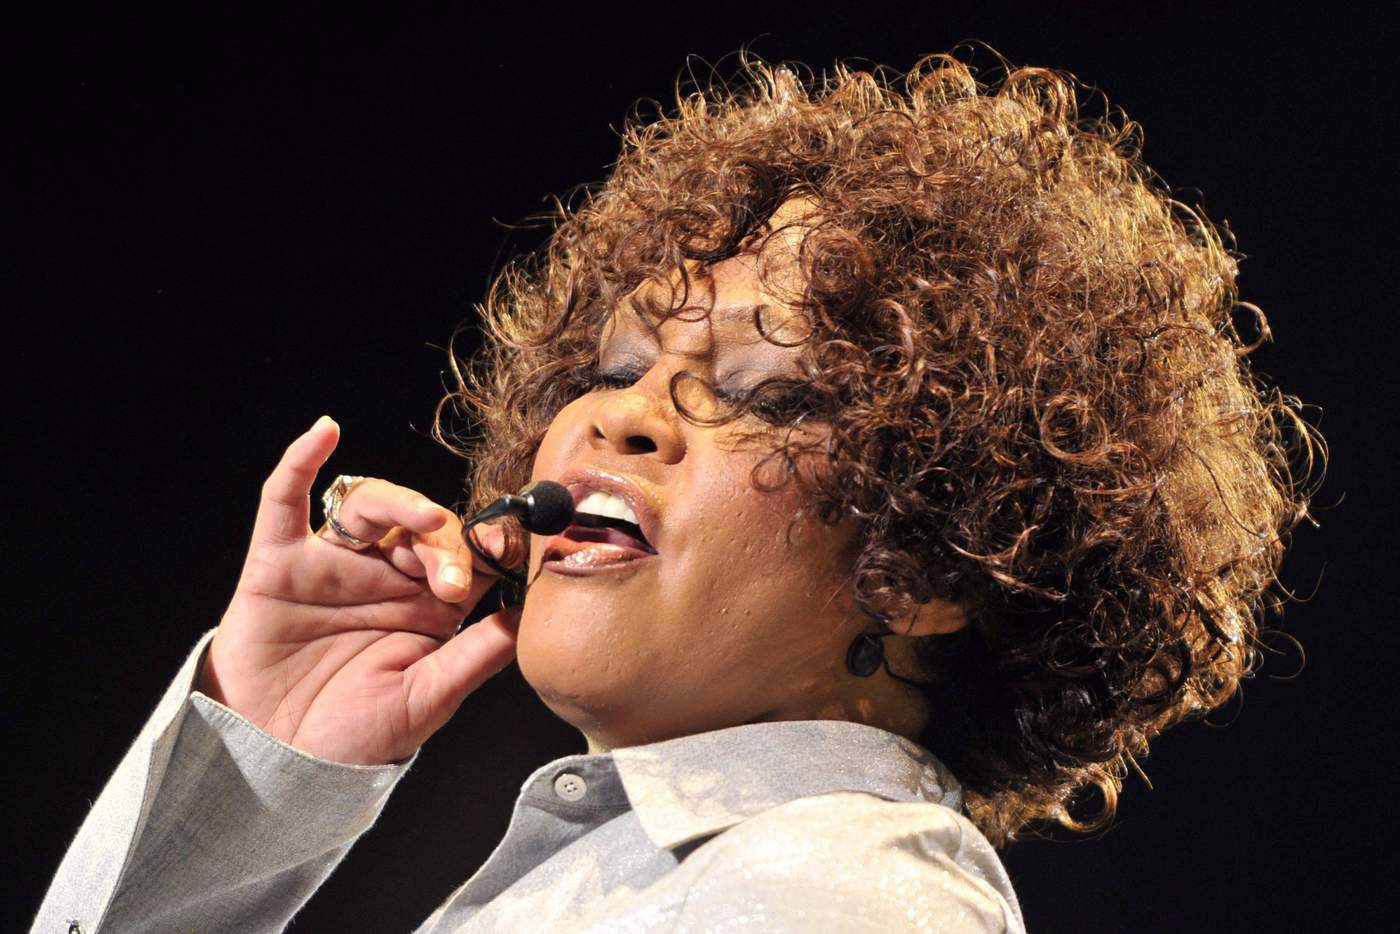 2012: Ve la última luz Whitney Houston, admirada cantante y actriz estadounidense